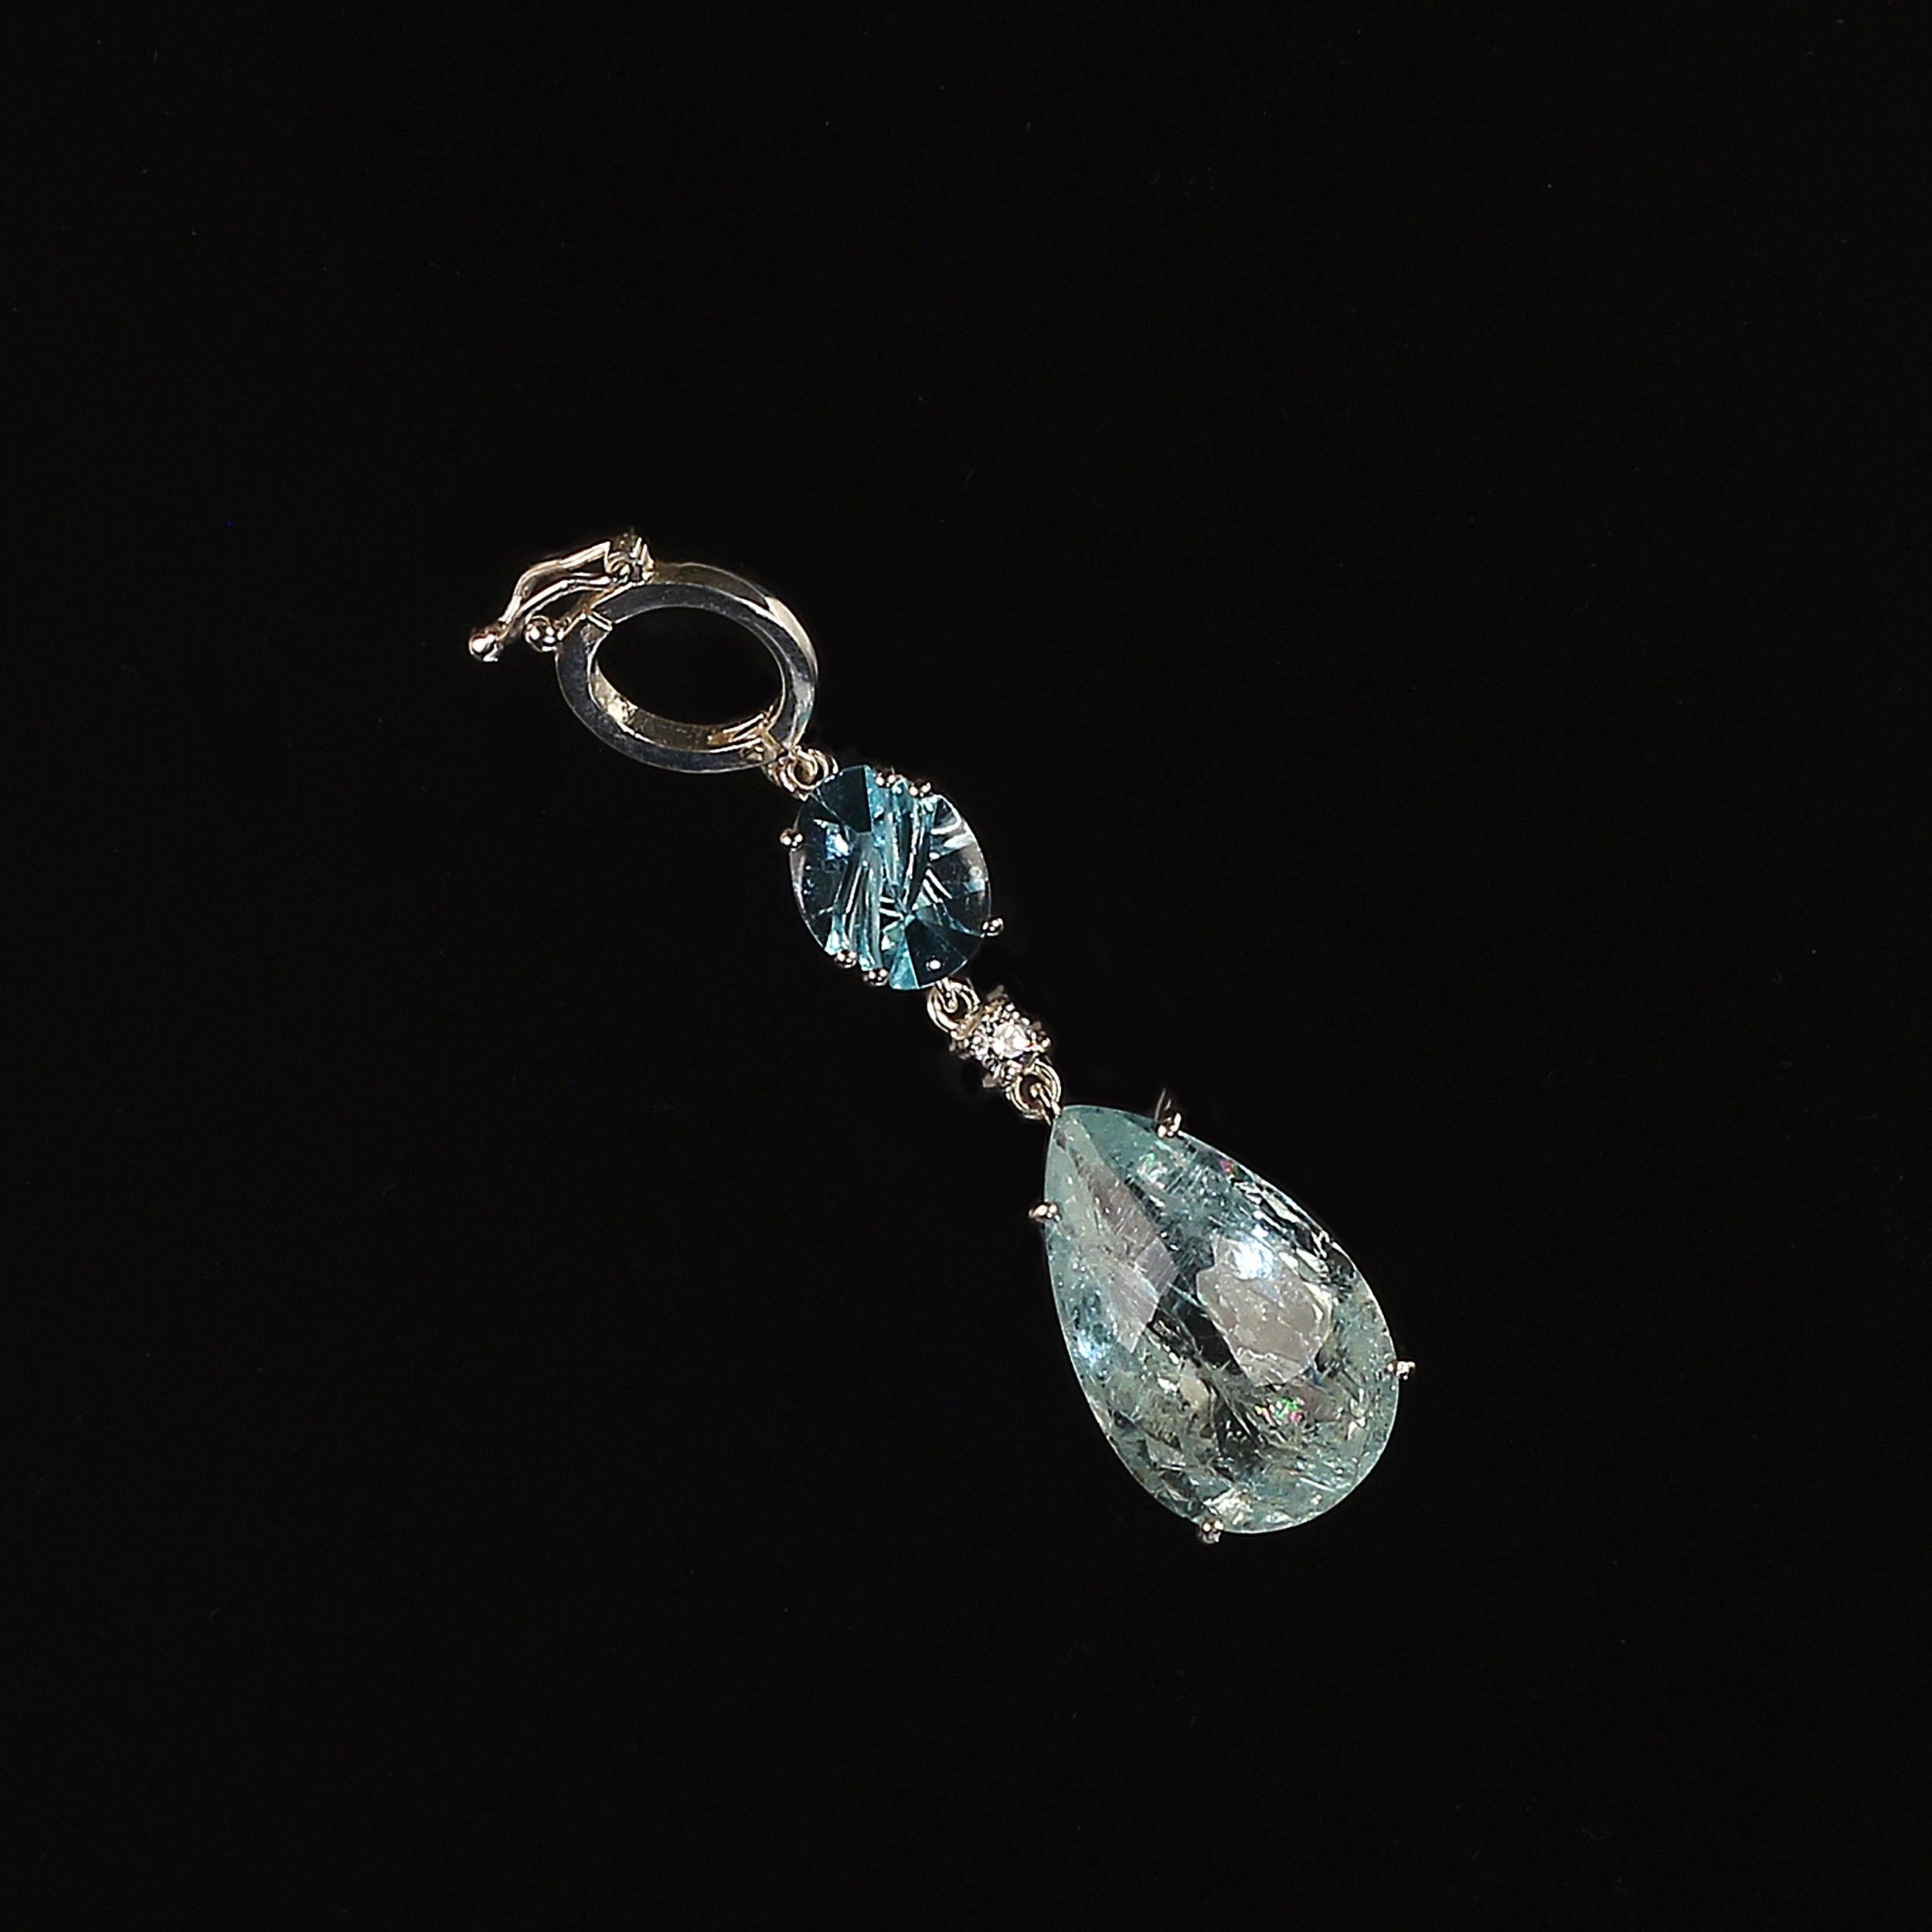 aquamarine gem